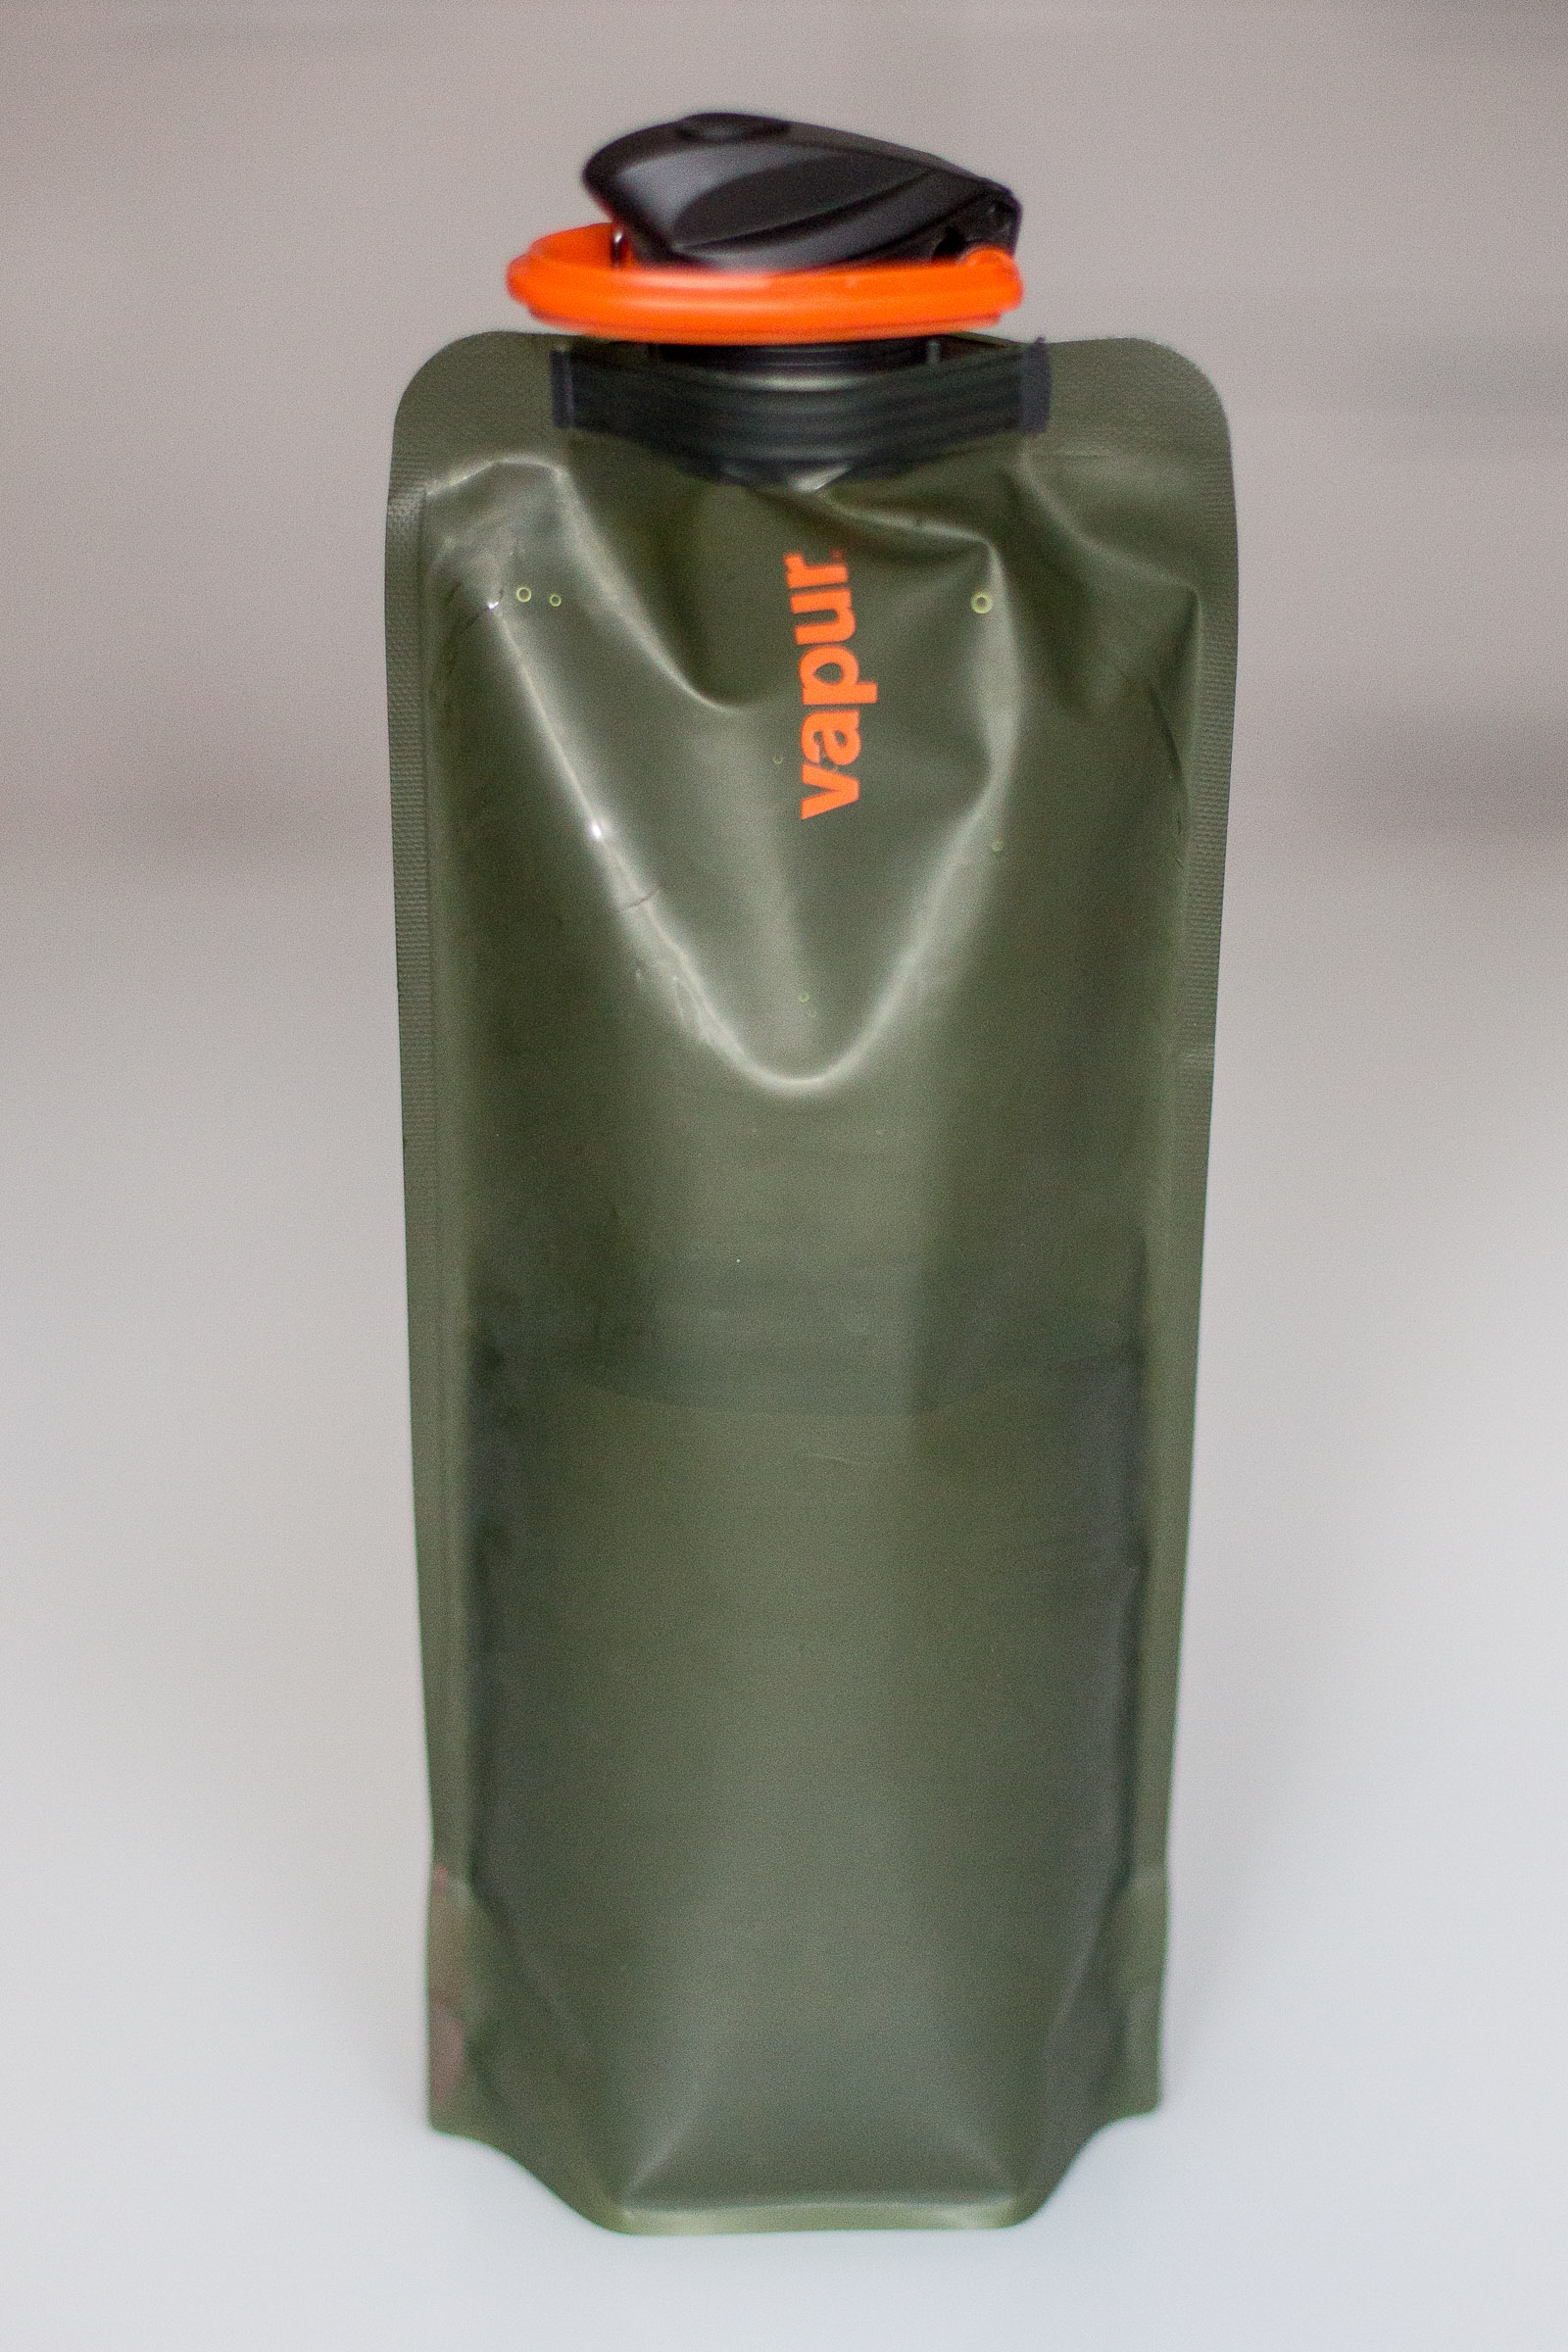 Vapur anti-Flasche ist olive grün, leicht und faltbar!